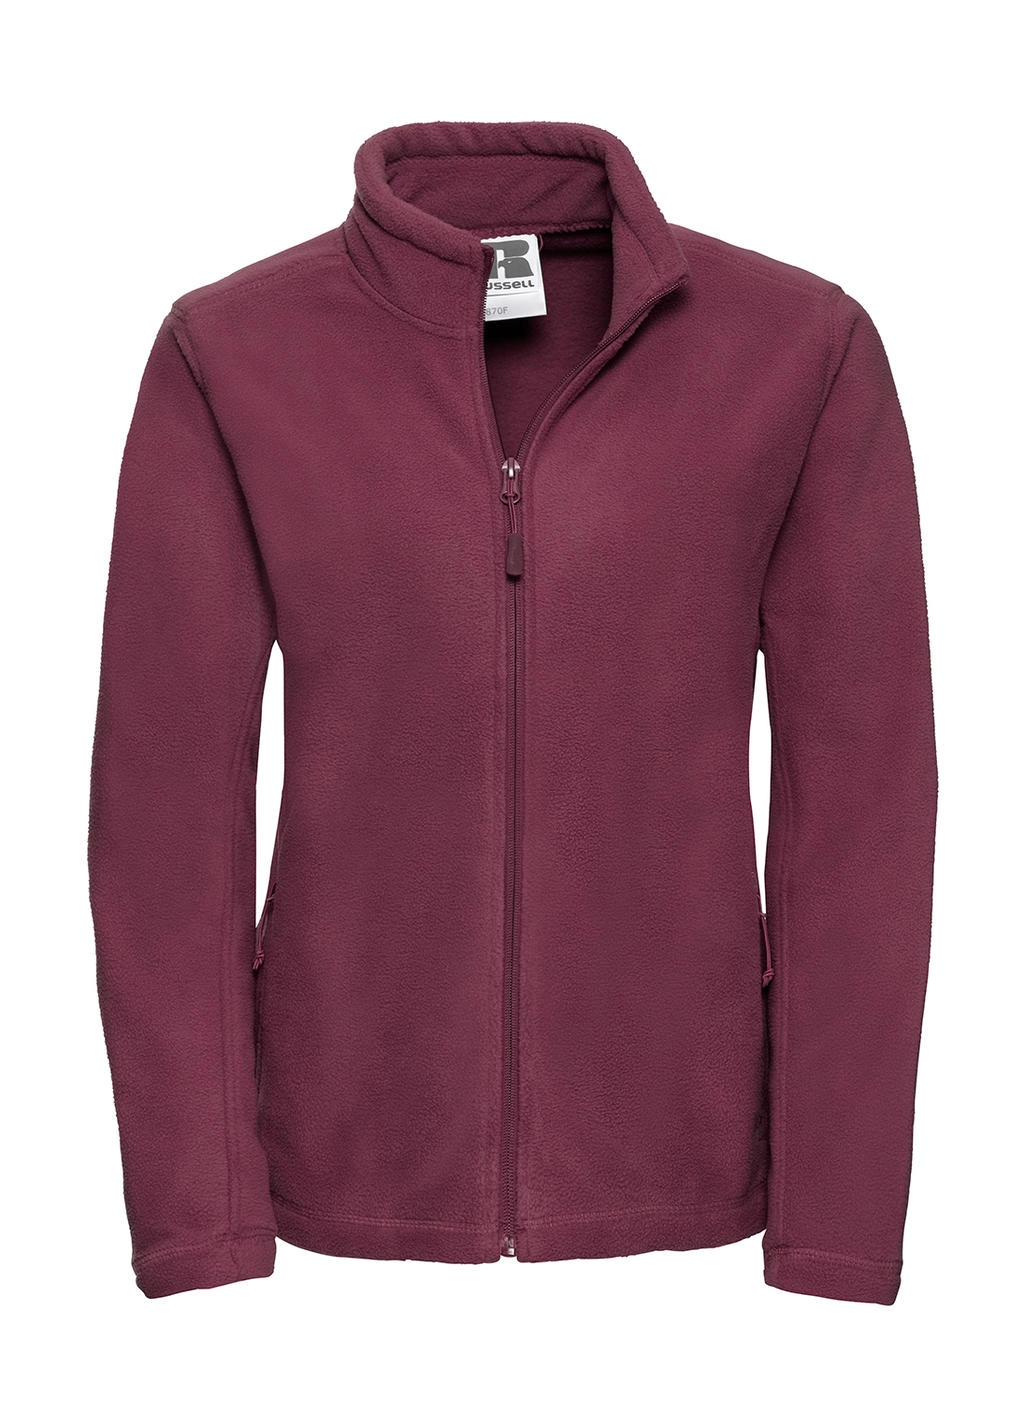 Ladies` Full Zip Outdoor Fleece zum Besticken und Bedrucken in der Farbe Burgundy mit Ihren Logo, Schriftzug oder Motiv.